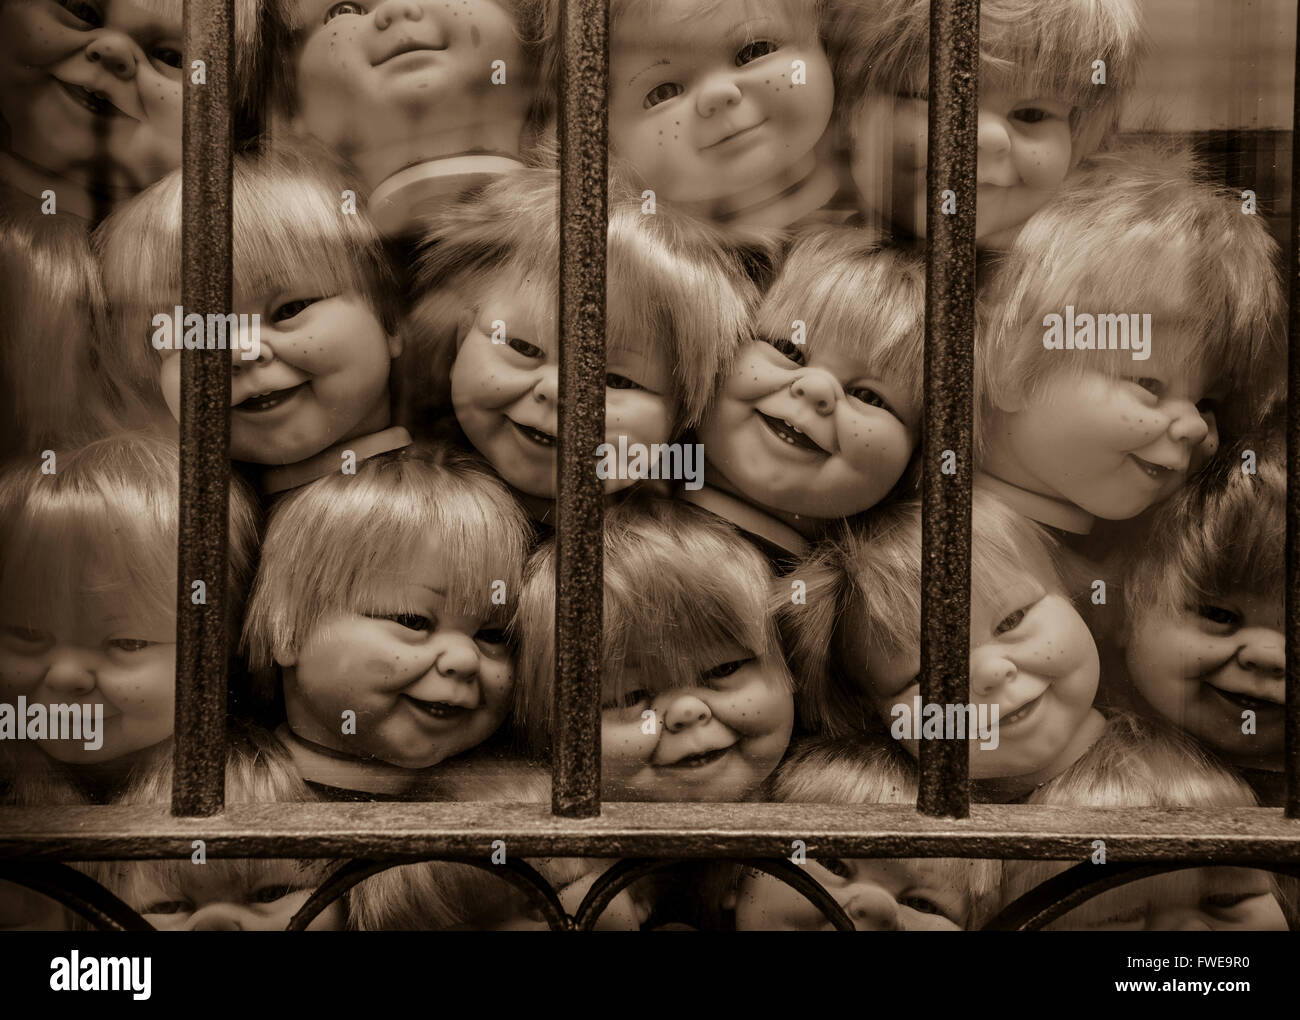 Creepy collezione di baby doll capi in una finestra in Spagna. Foto Stock